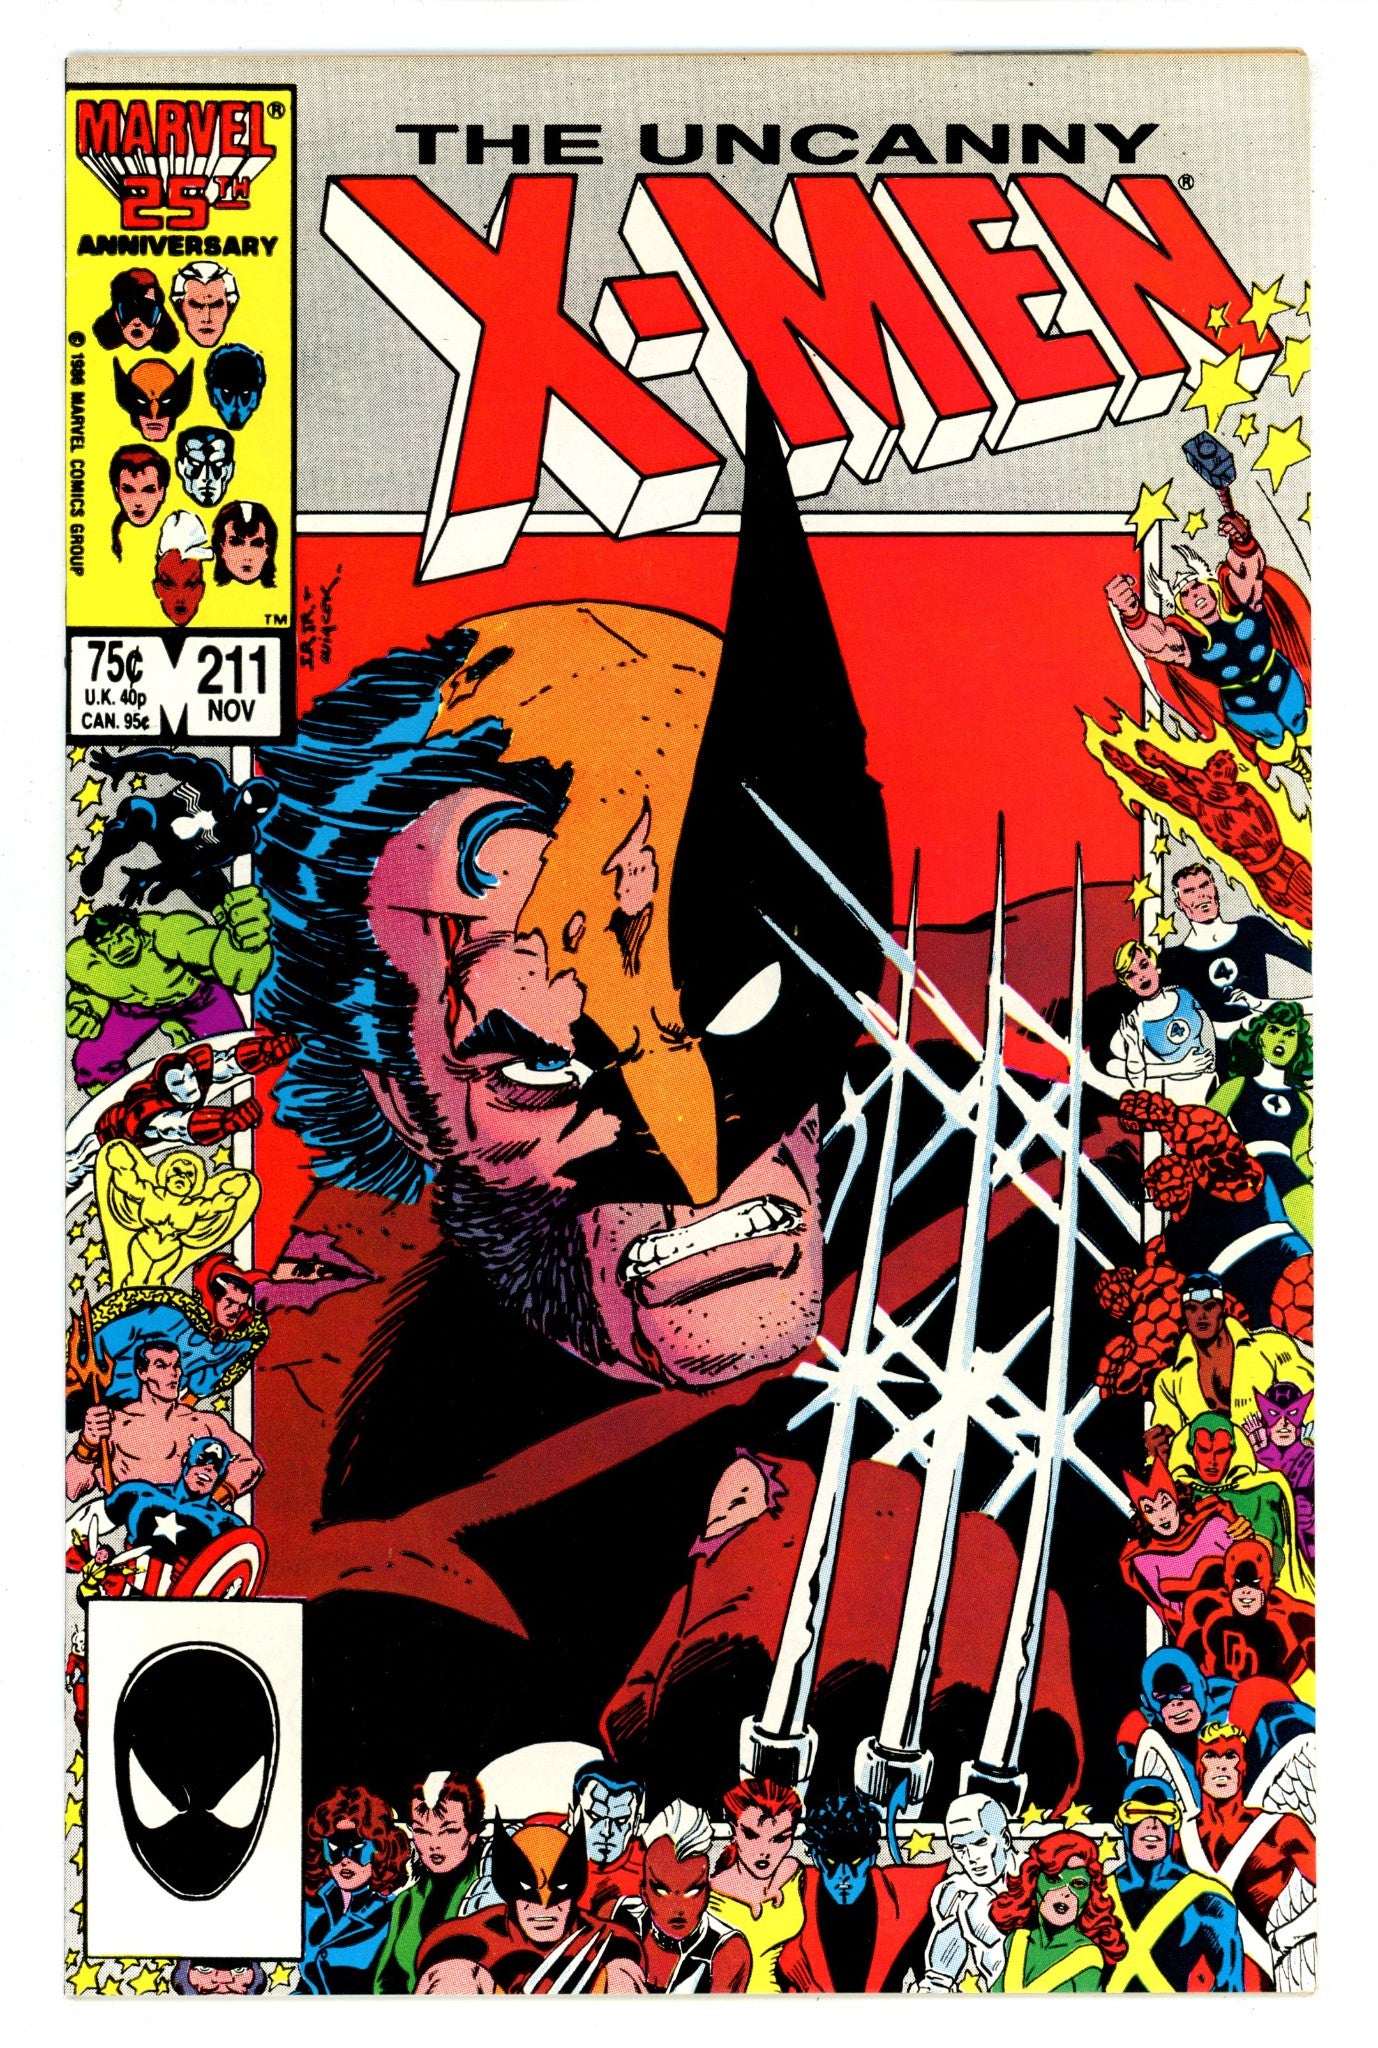 The Uncanny X-Men Vol 1 211 VF (8.0) (1986) 